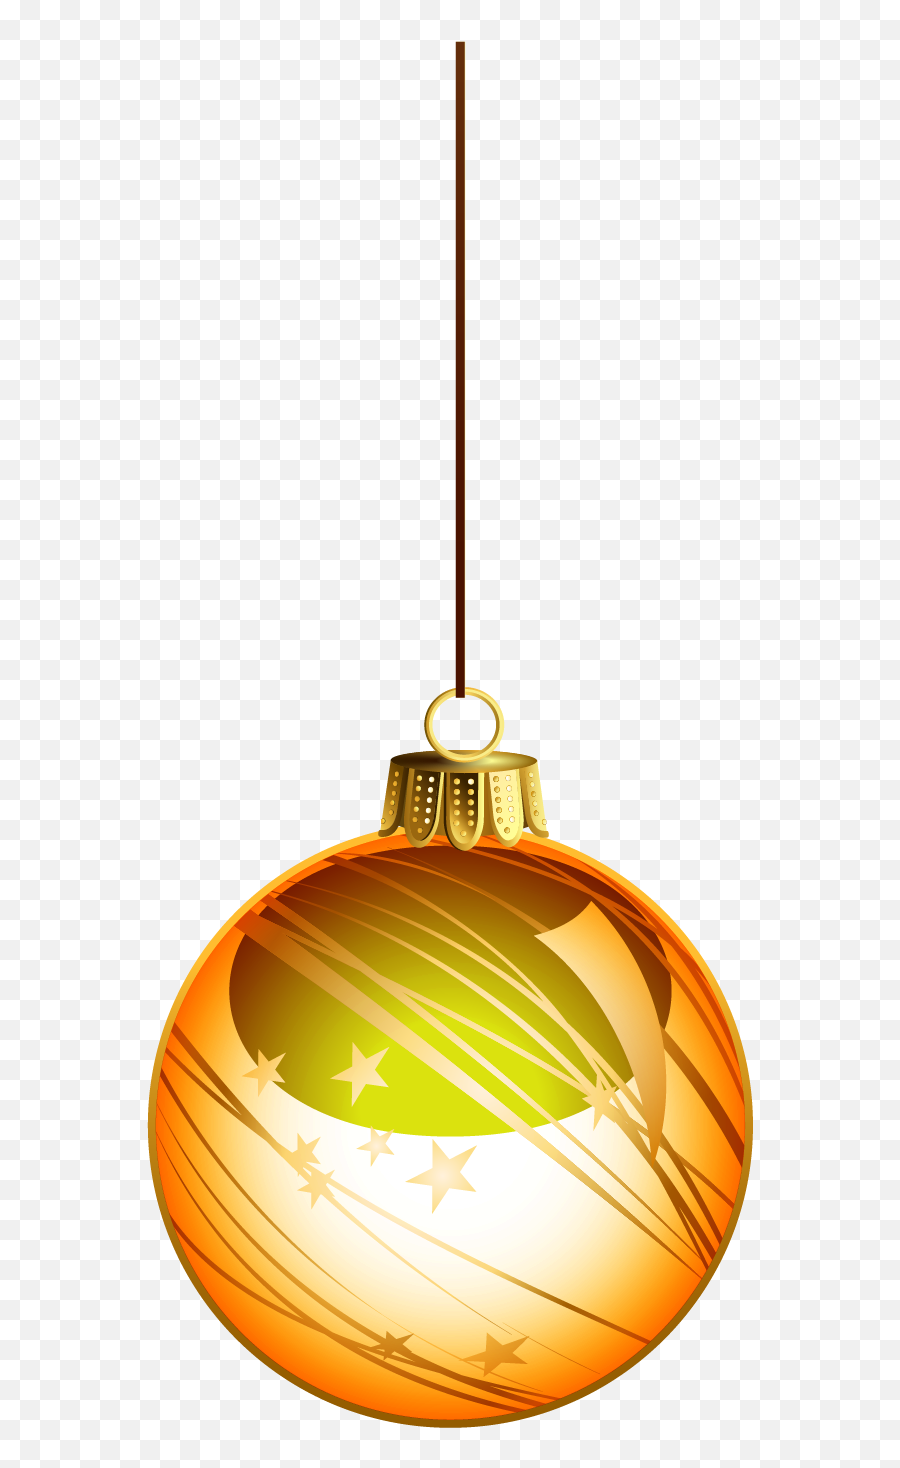 Free Png Christmas Ball - Orange Christmas Ball Decor Png,Decor Png